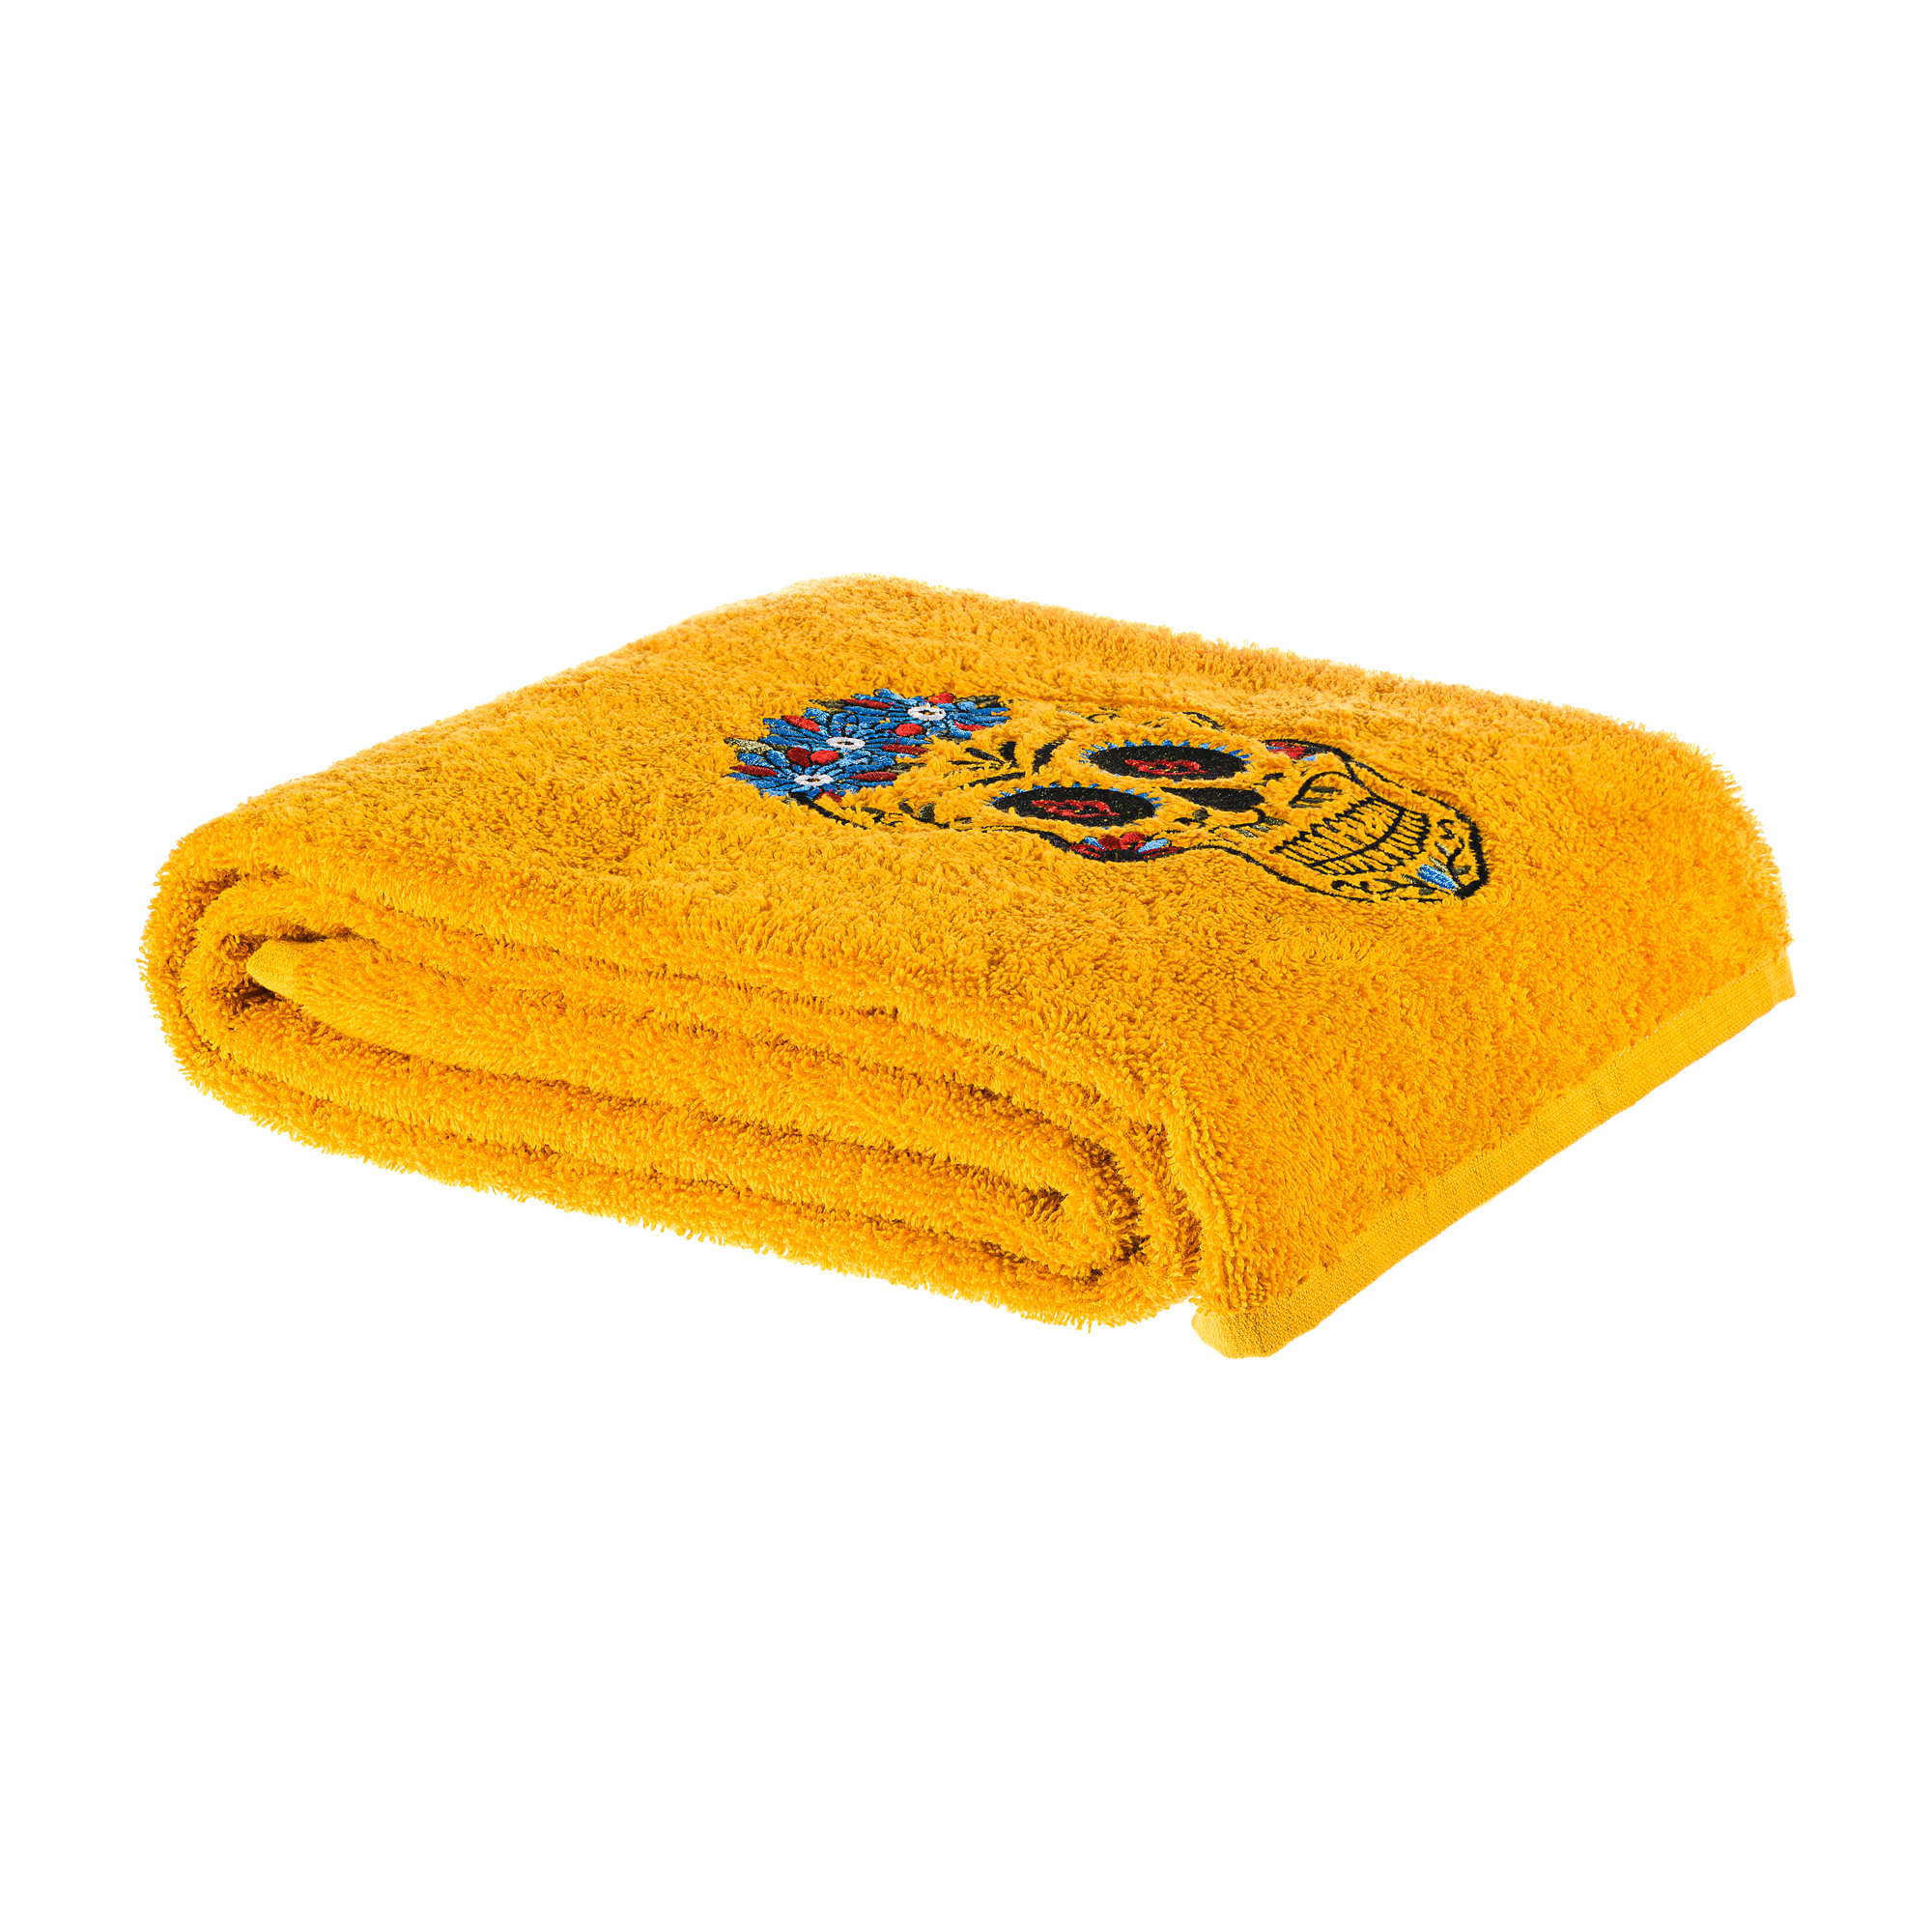 Полотенце Los Muertos для ванной 70х140 см., цвет желтый